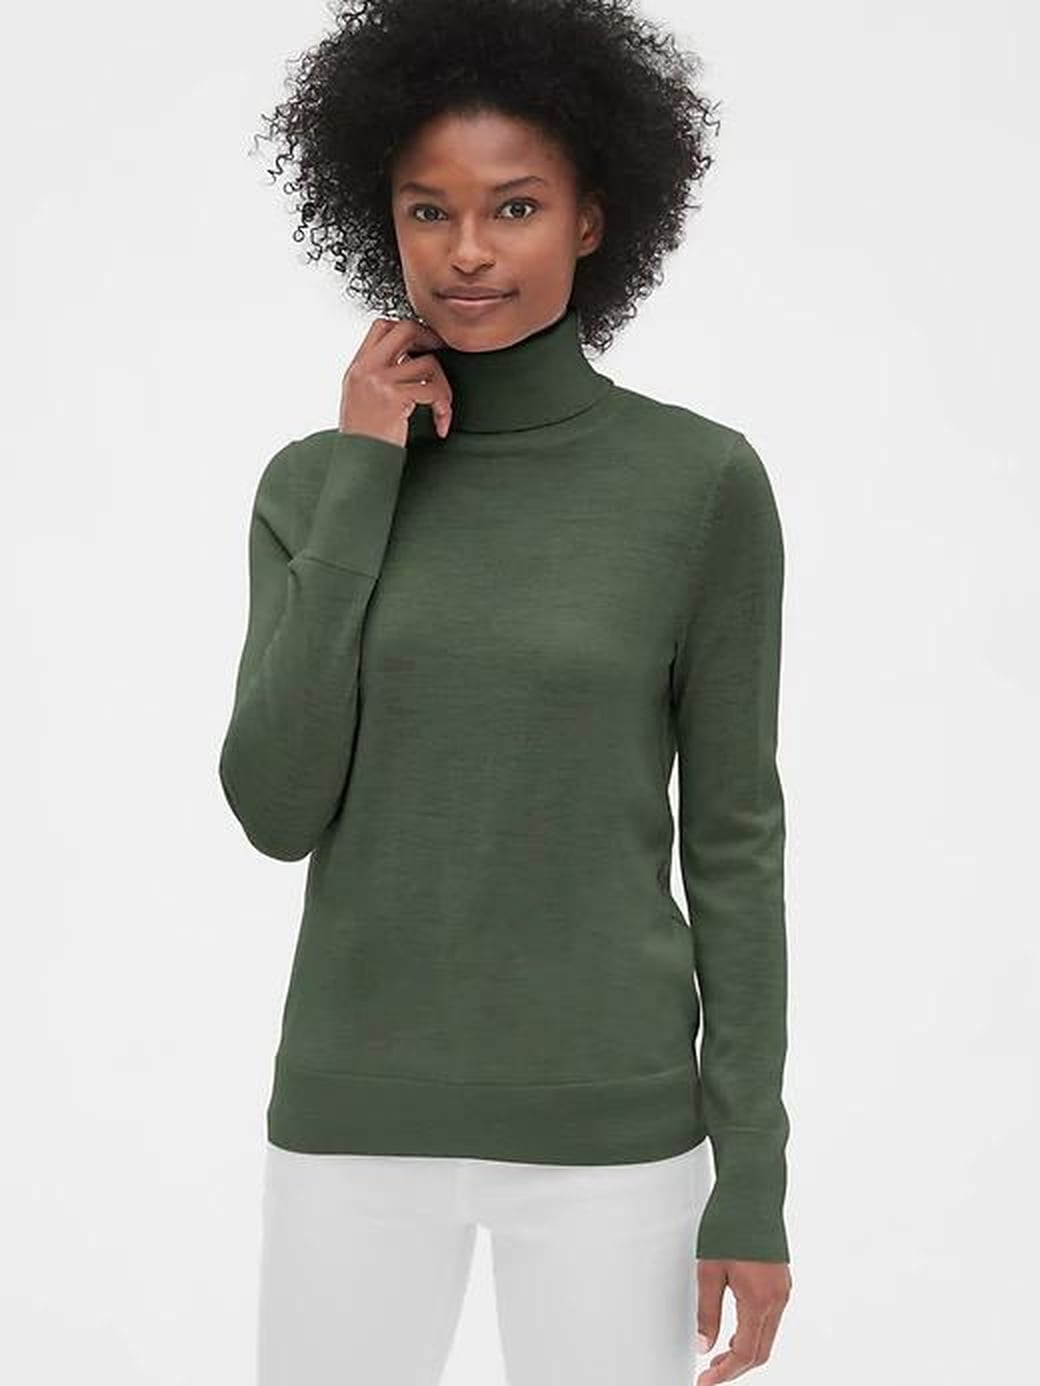 Best Winter Sweater Styles | POPSUGAR Fashion